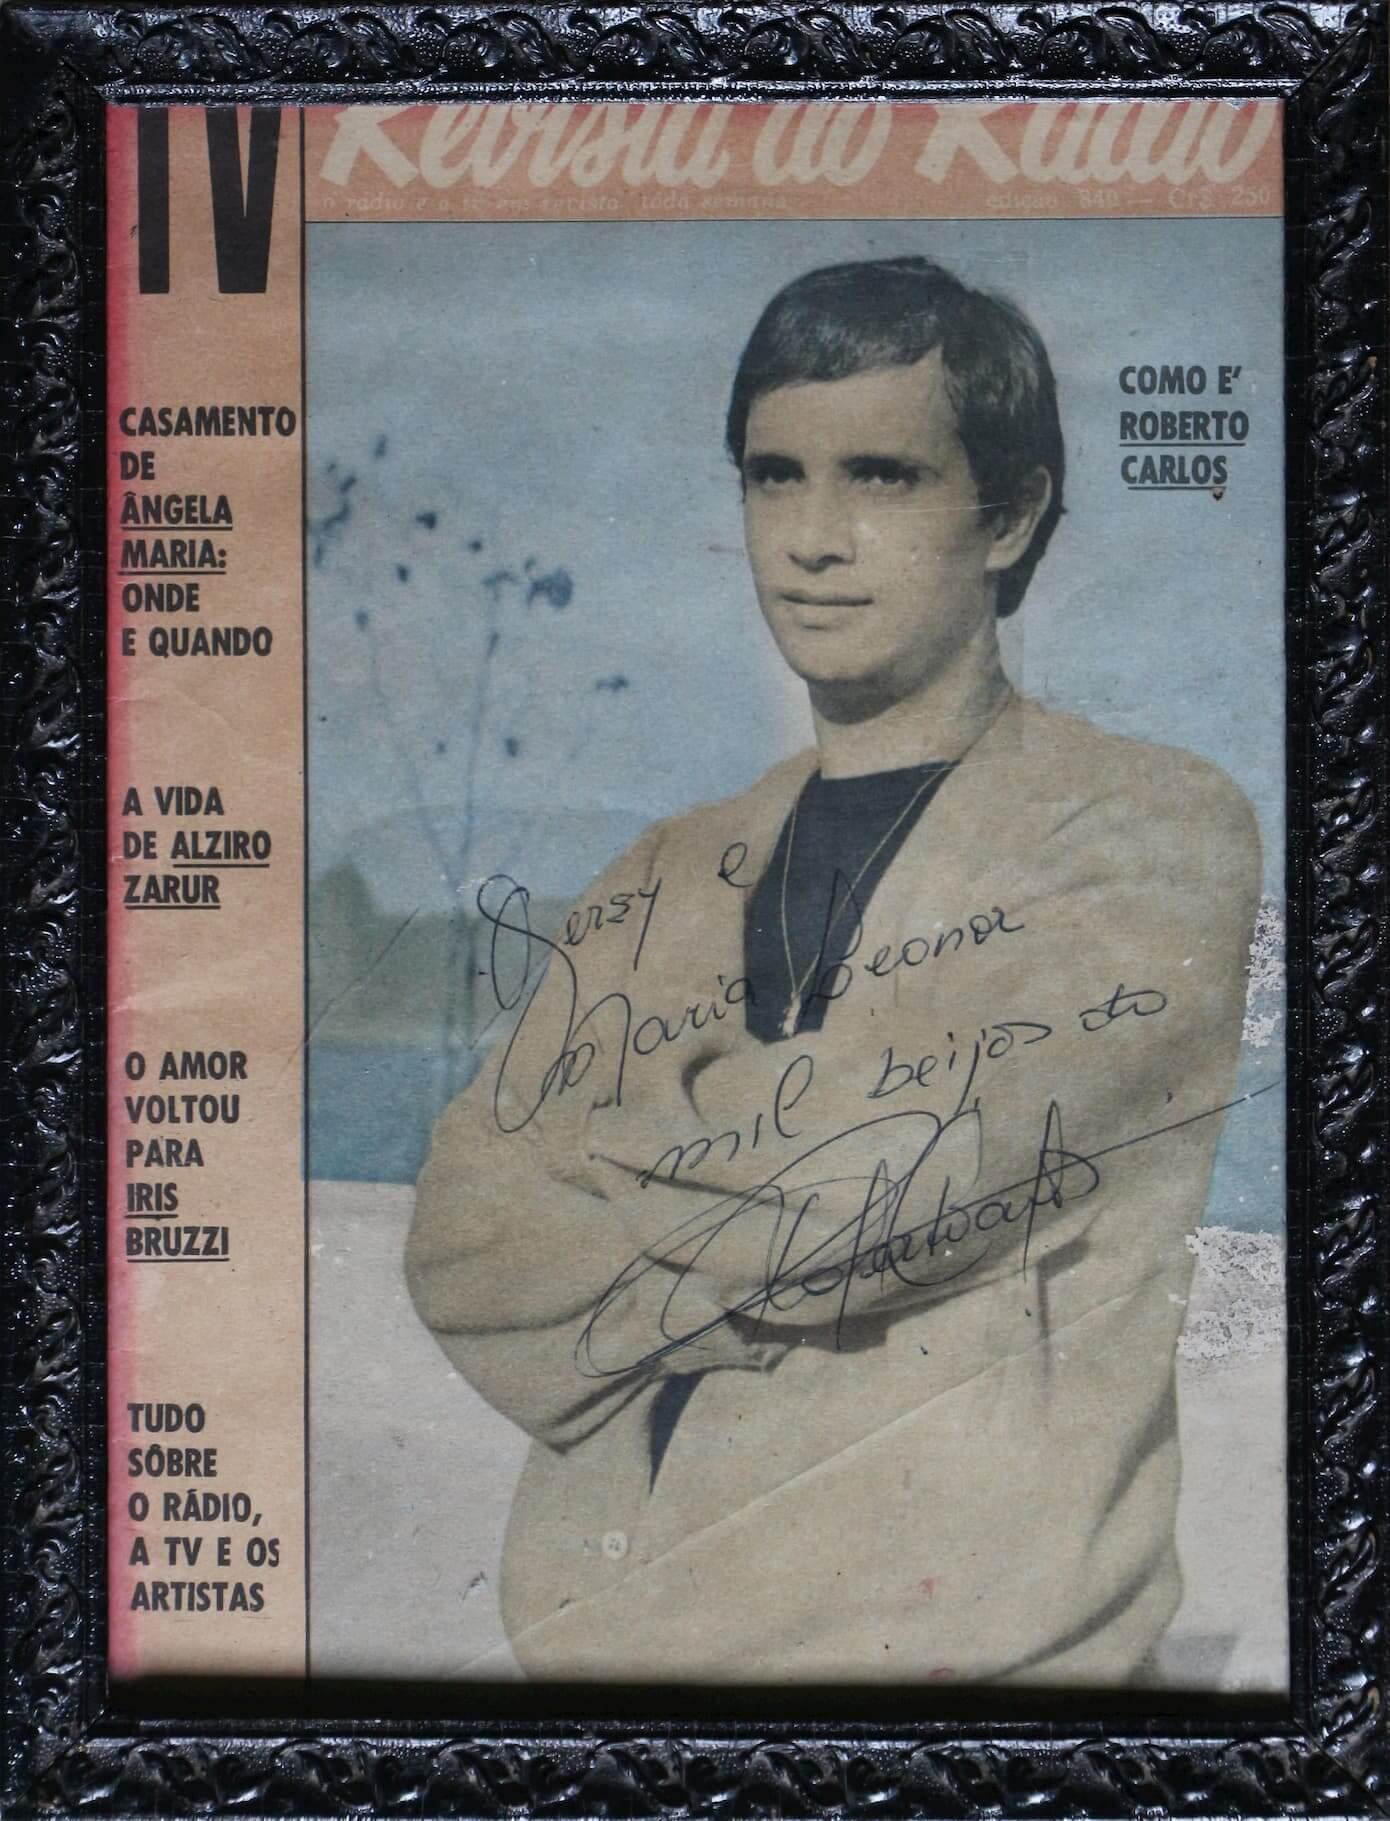 A imagem mostra a capa da Revista do Rádio autografada por Roberto Carlos às irmãs Volpato.